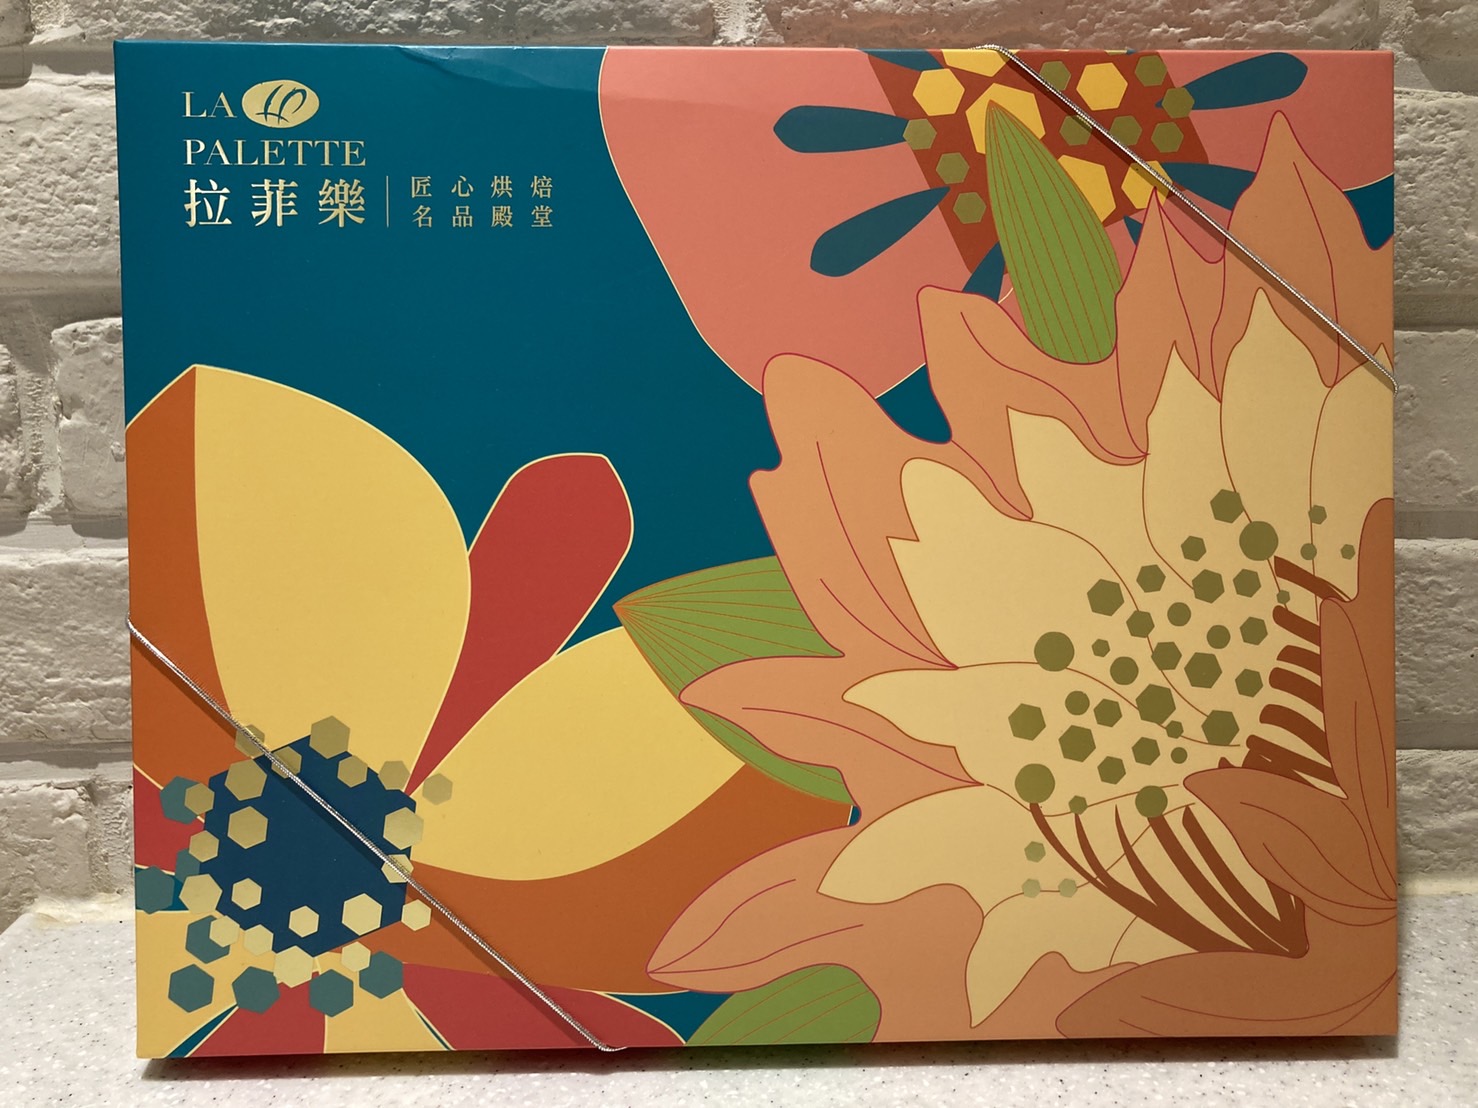 拉菲樂【LA PALETTE】品牌介紹-中秋禮盒月餅-小農金獎禮盒(F901)